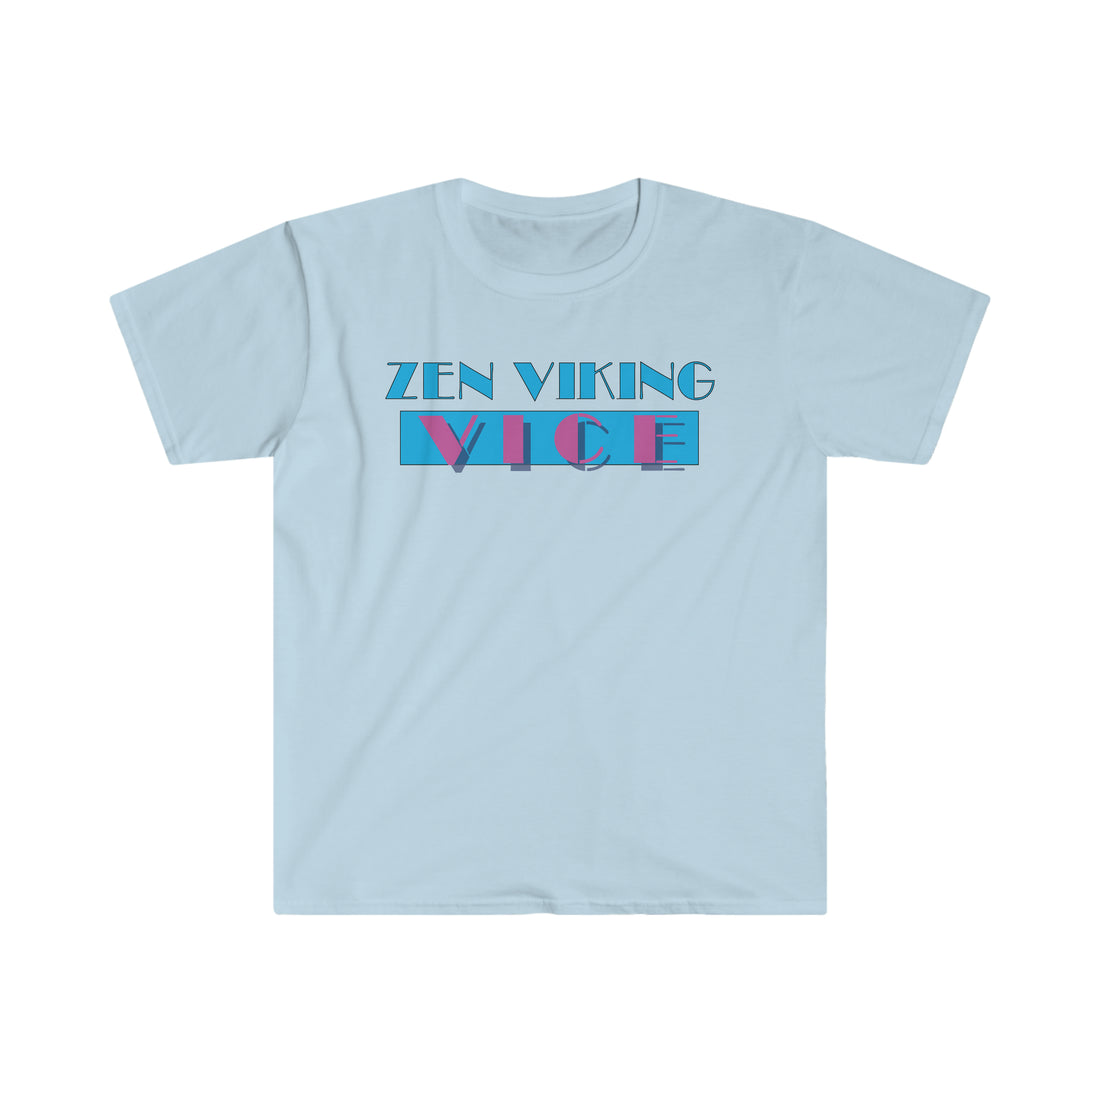 Zen Viking Vice T-Shirt - THE ZEN VIKING